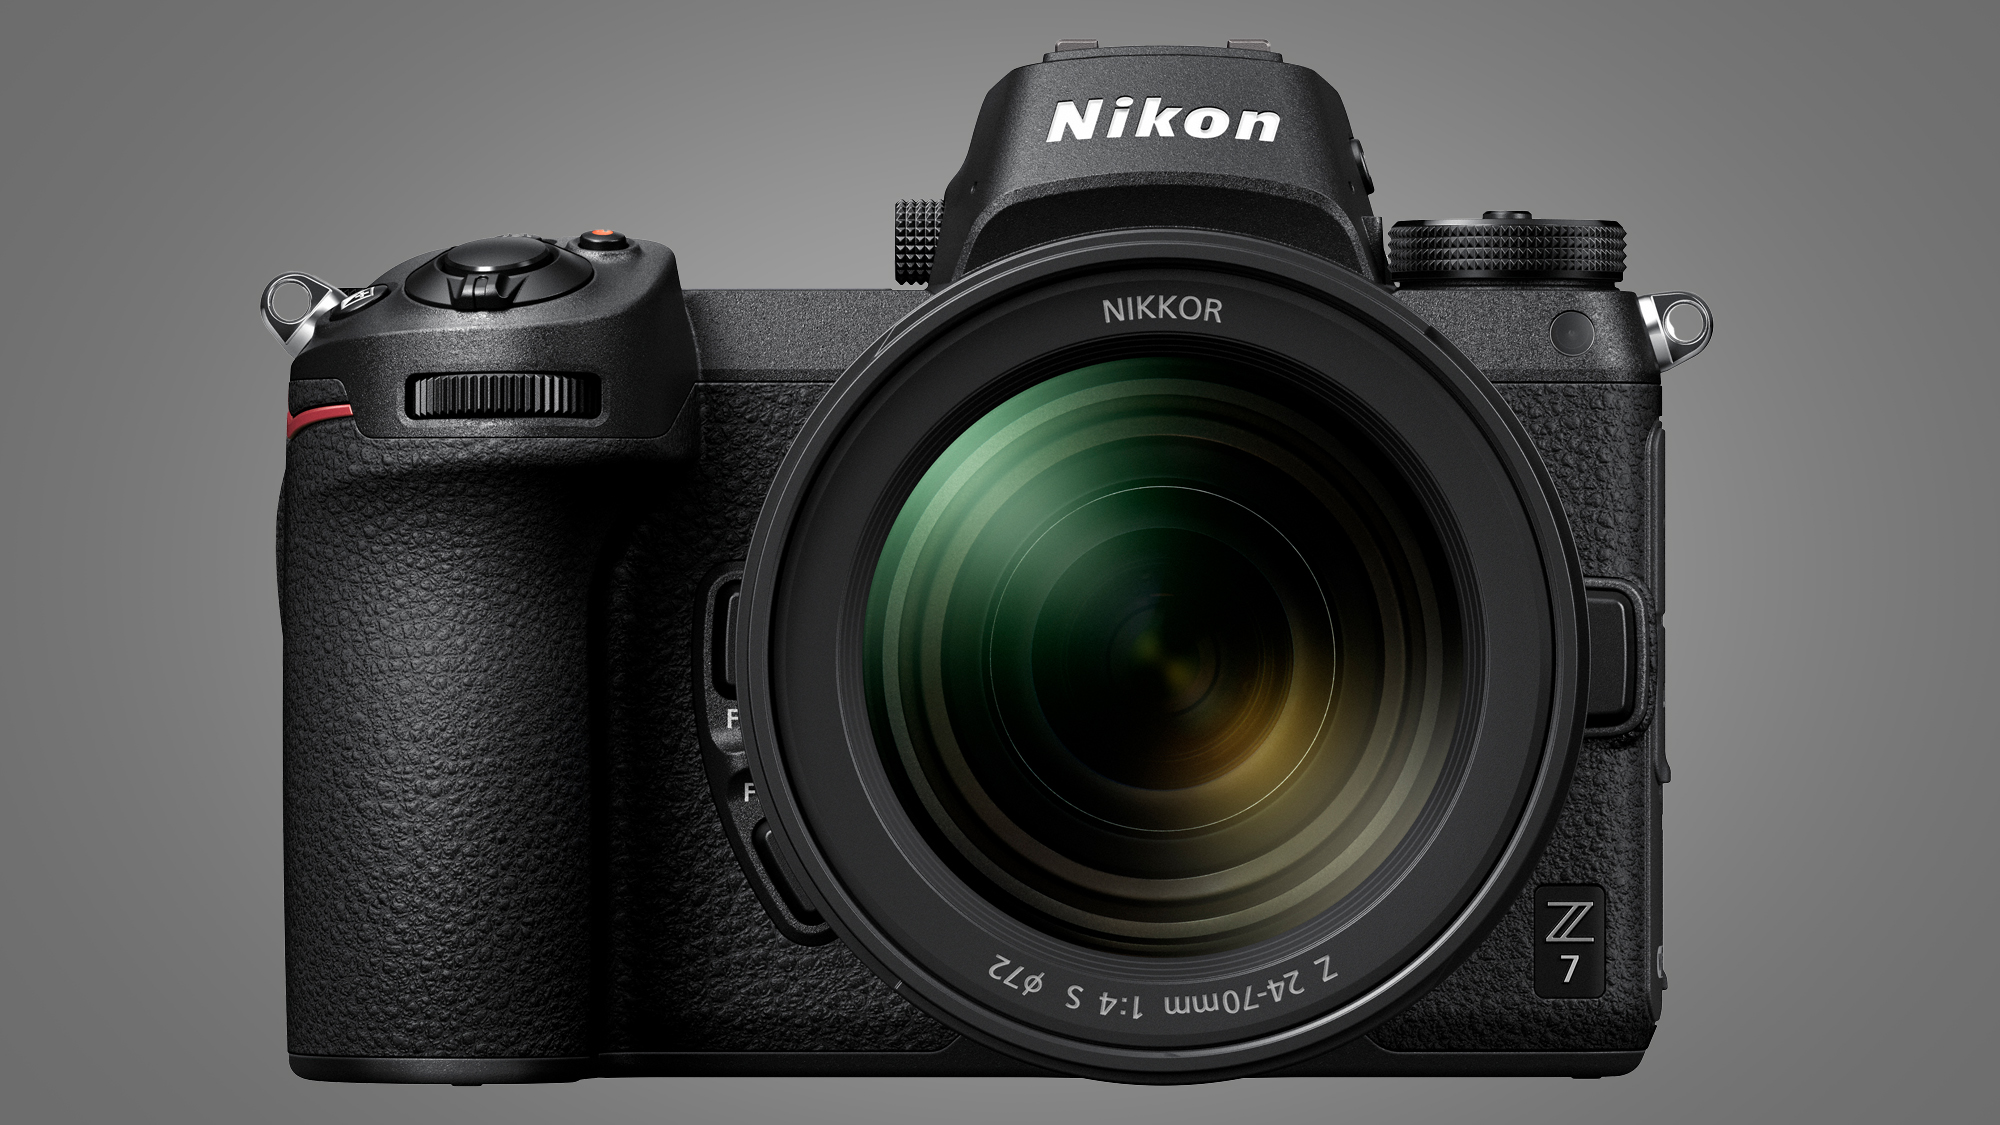 The Nikon Z7 camera on a grey background